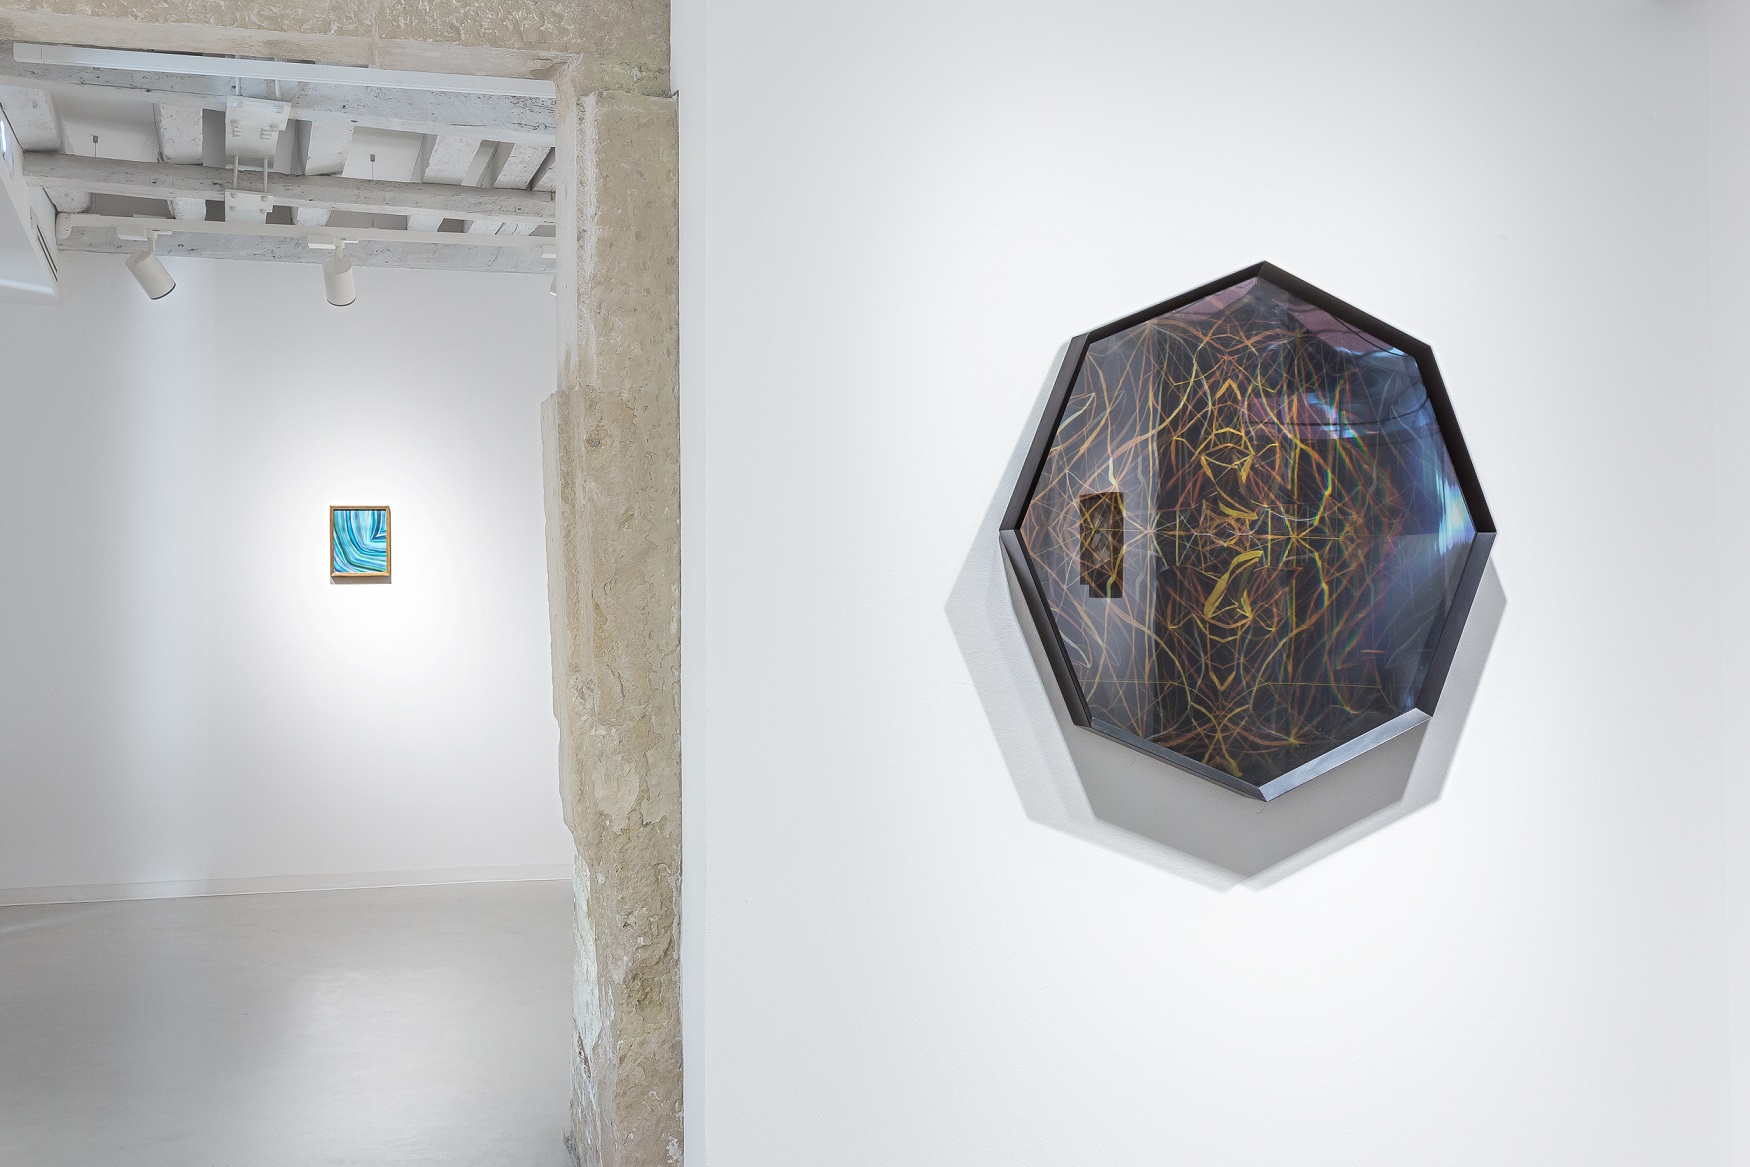 Maurizio Donzelli, Invisibile-No, exhibition view at Marignana Arte, sala 2, Venezia 2016, photo Enrico Fiorese